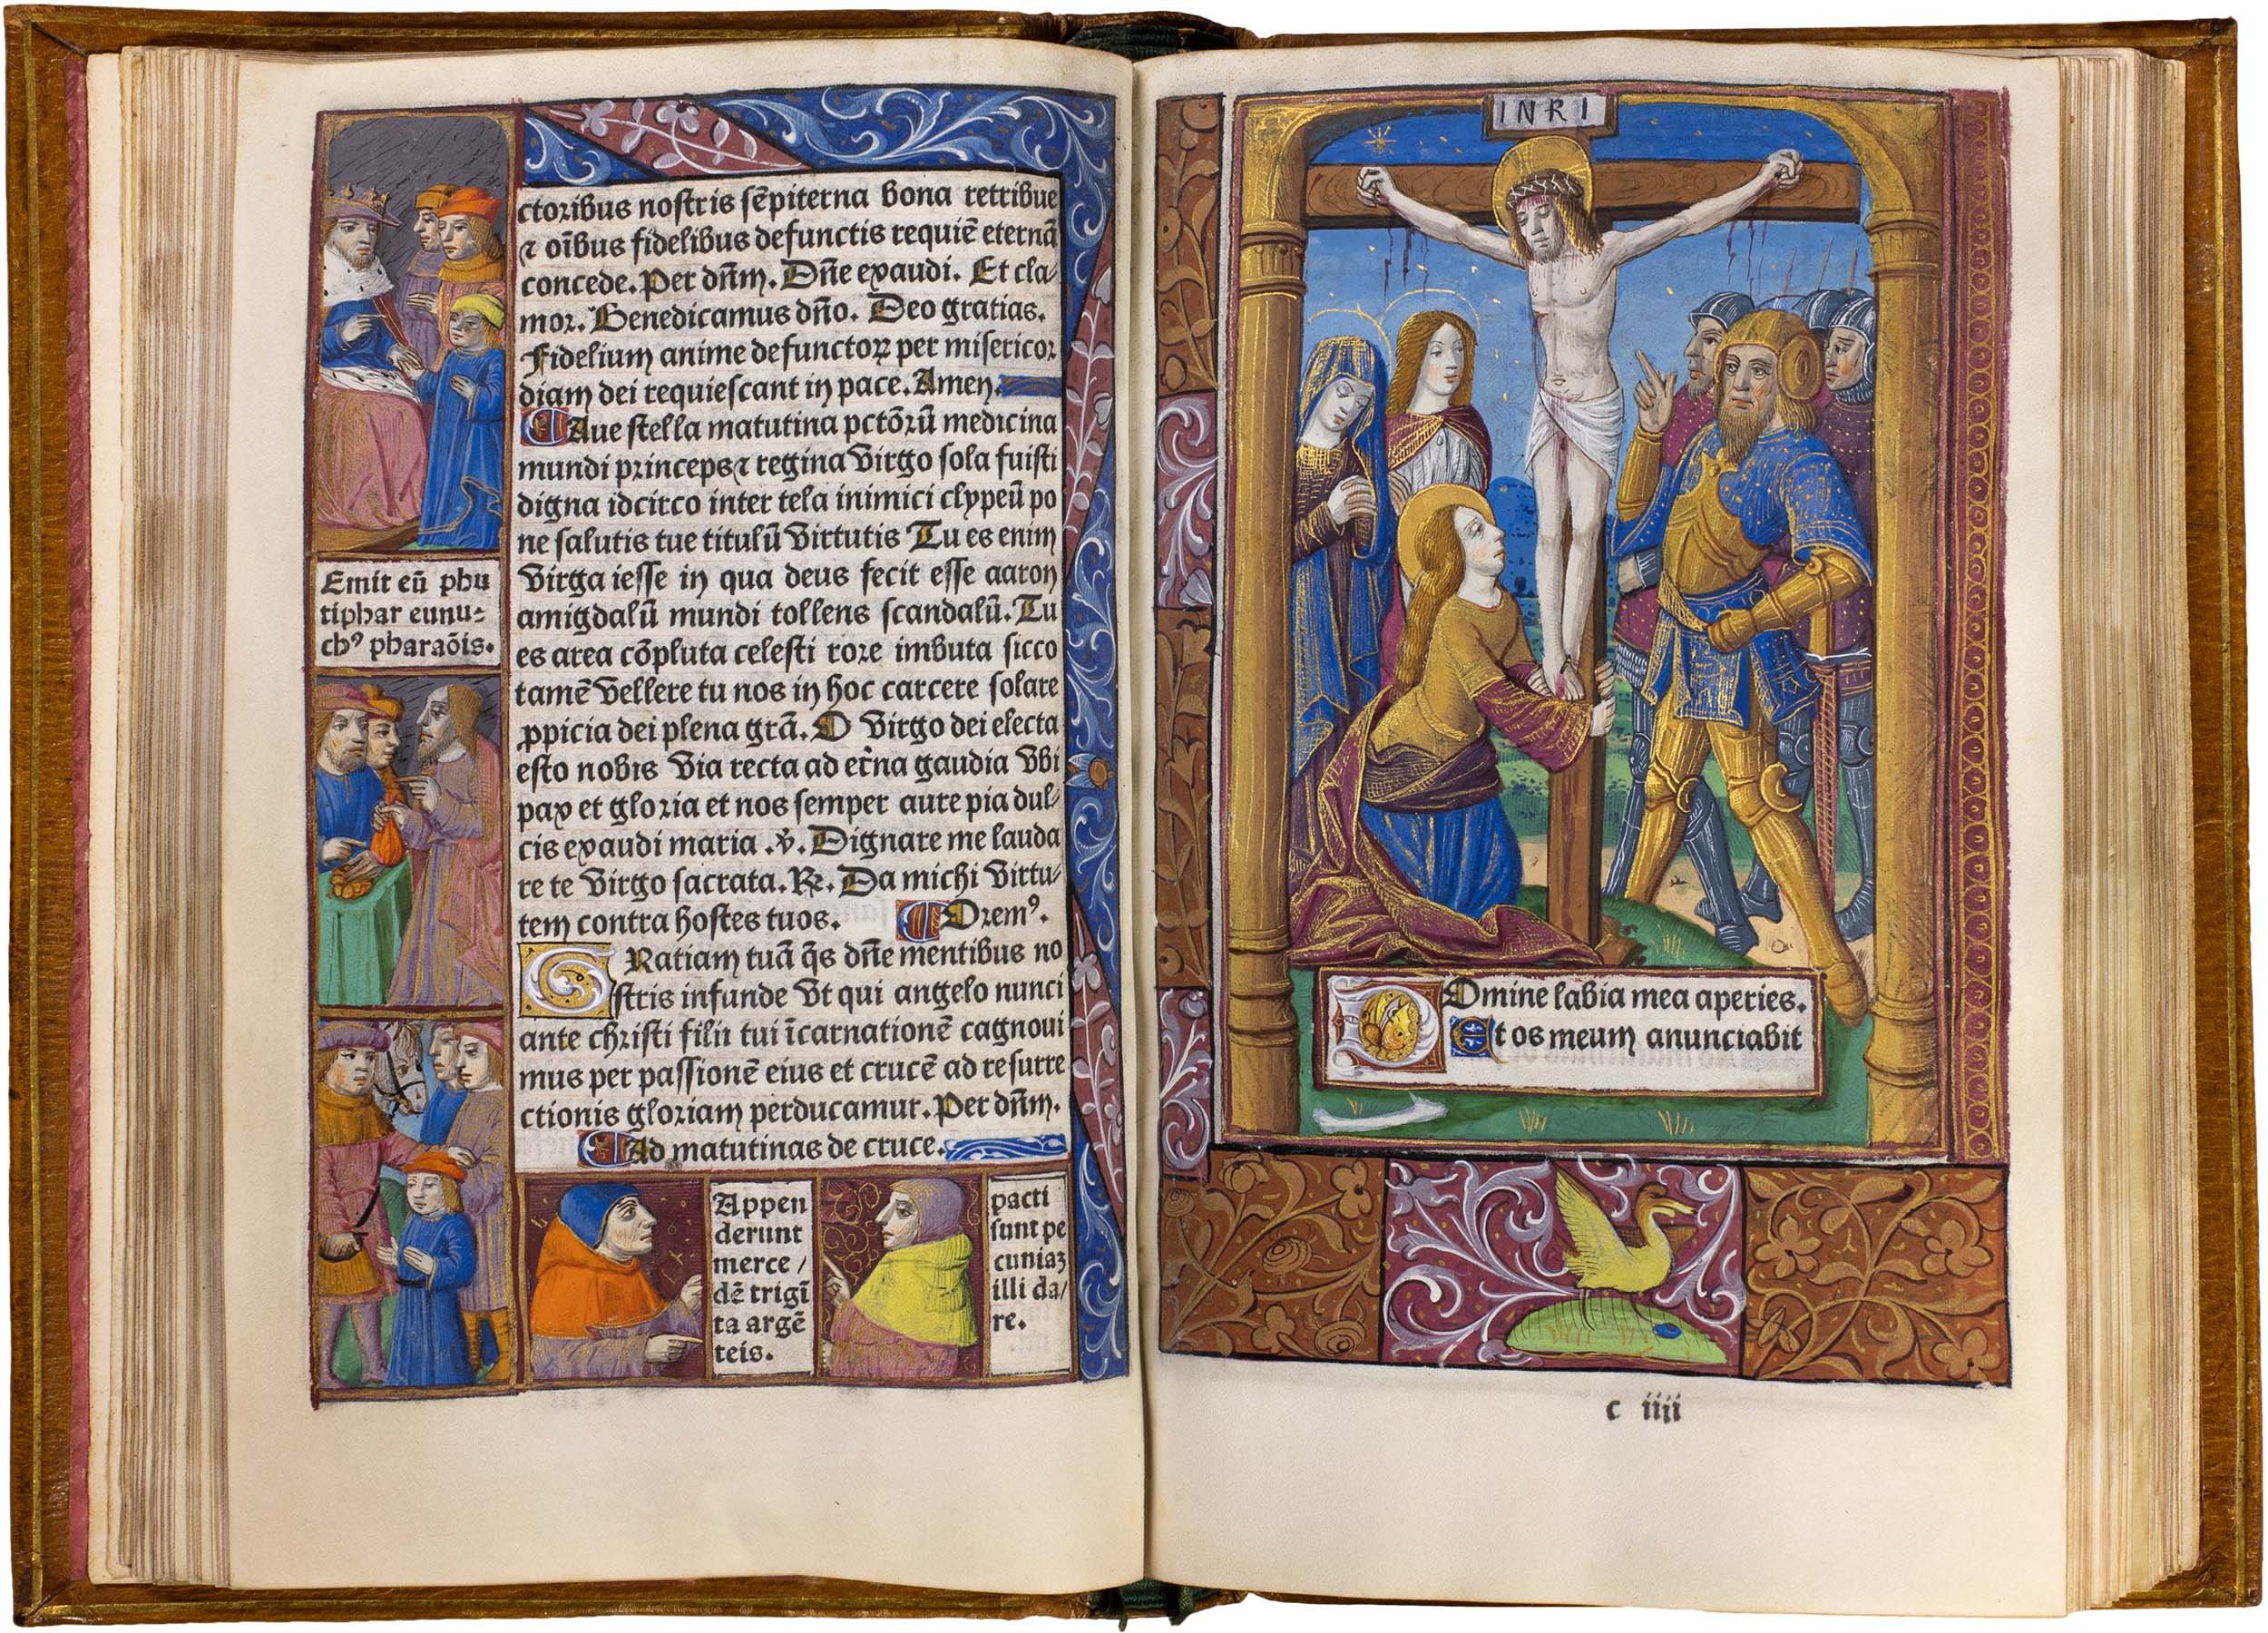 Horae-bmv-pigouchet-19-april-1494-pigouchet-robert-gaguin-illuminated-vellum-copy-32.jpg